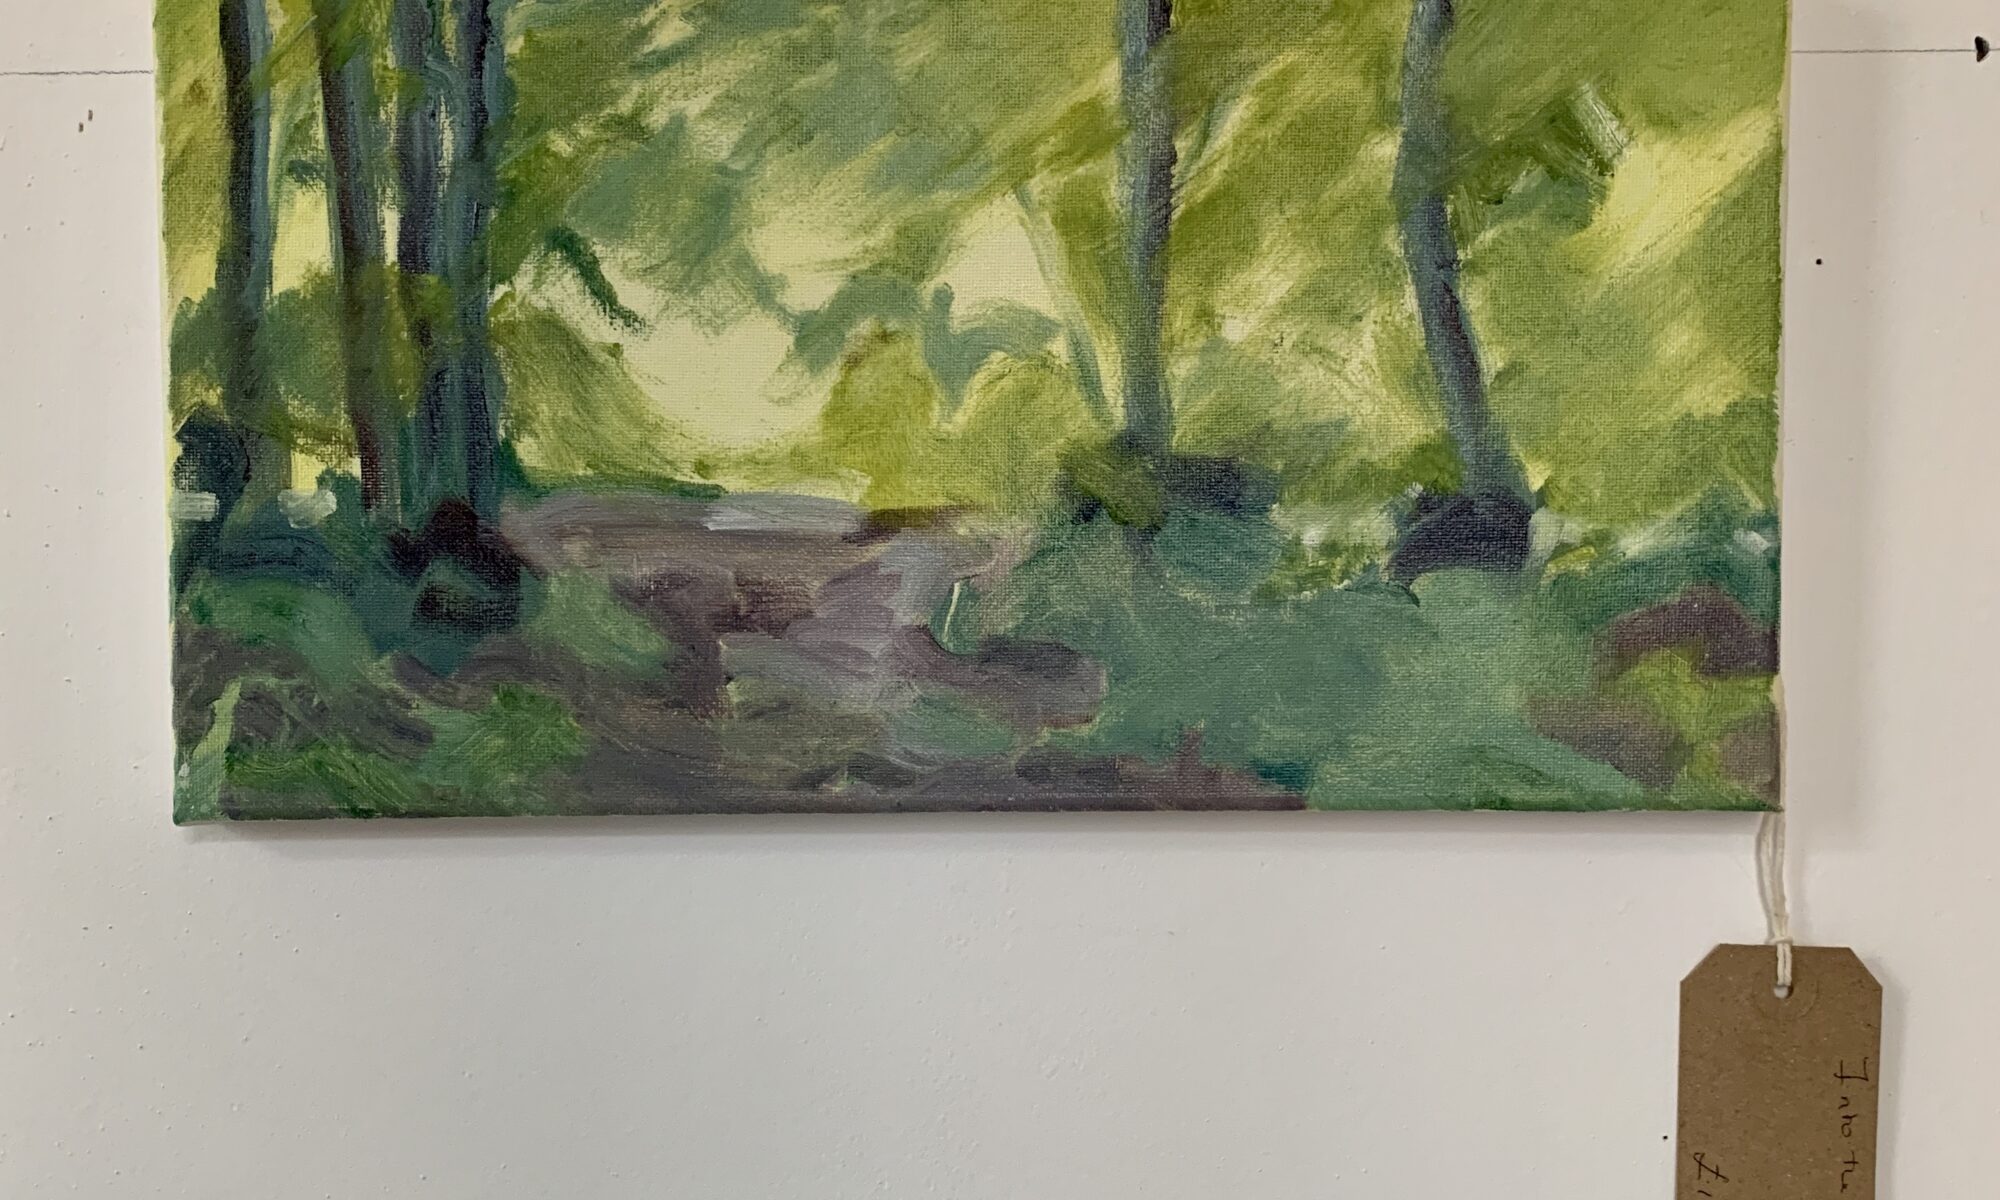 Into the Woods II - acrylic on canvas